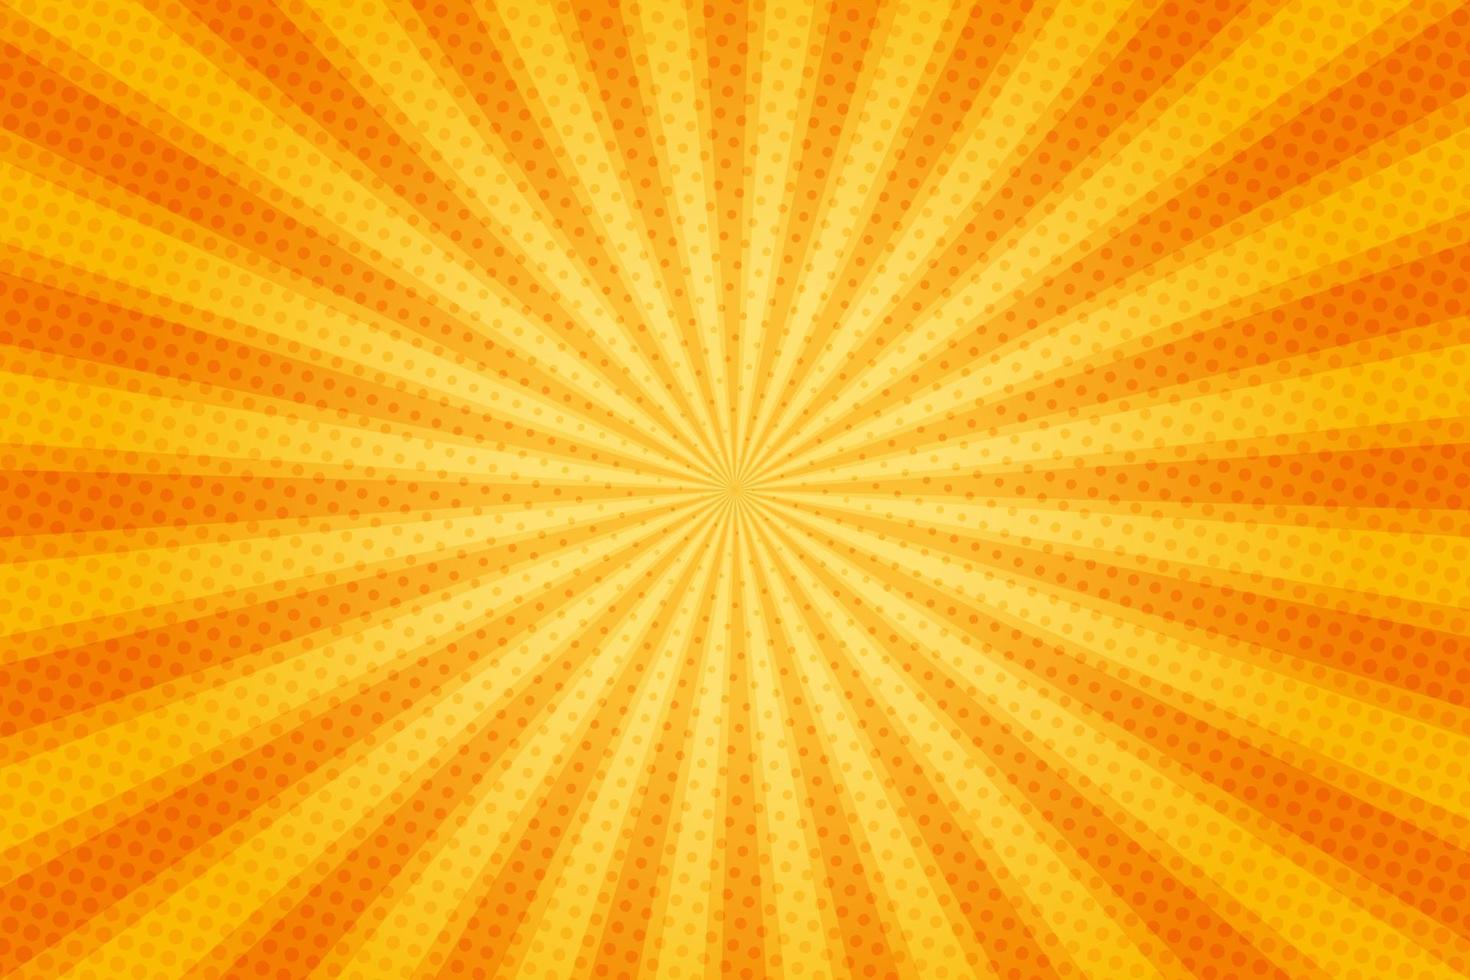 zonnestralen retro vintage stijl op gele en oranje achtergrond, komische patroon met starburst en halftoon. cartoon retro zonnestraaleffect met stippen. stralen. zomer banner vectorillustratie. vector